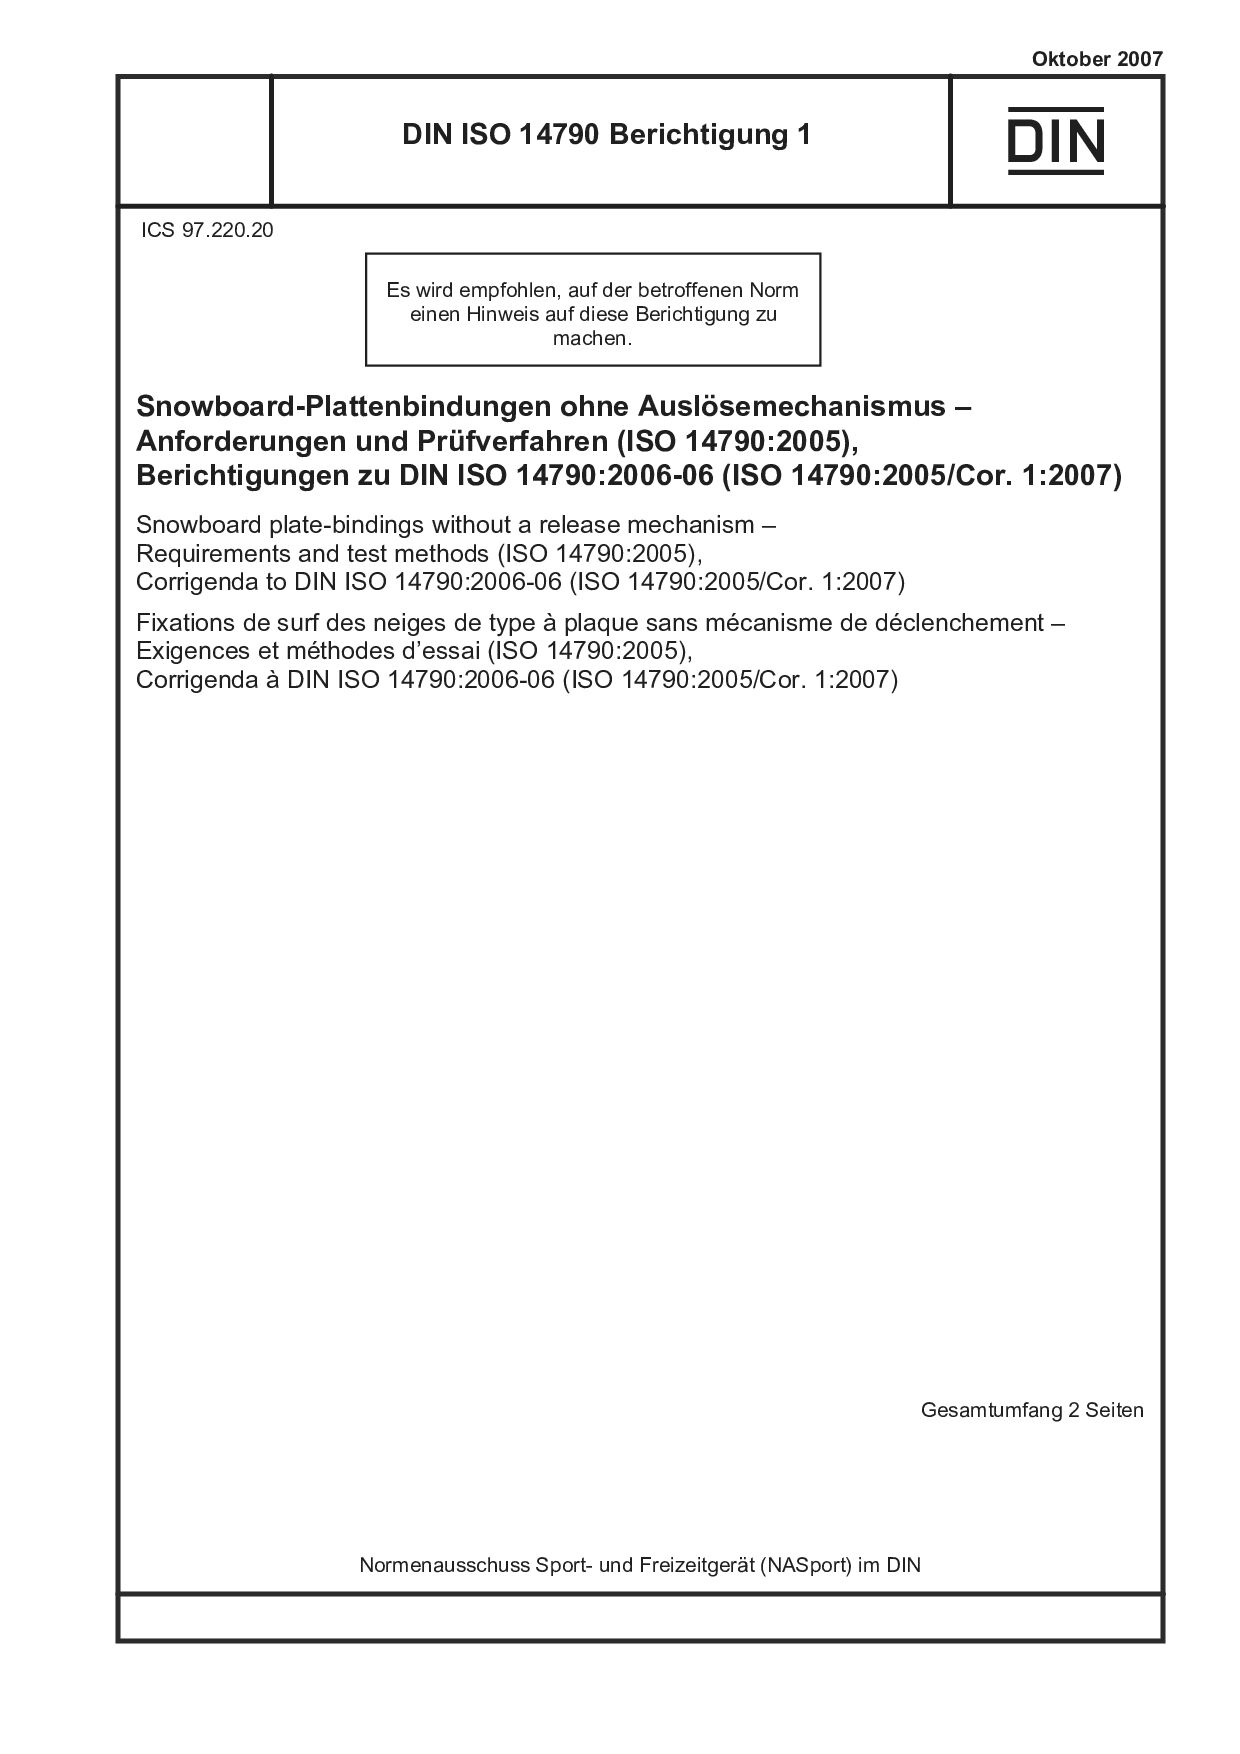 DIN ISO 14790 Berichtigung 1:2007